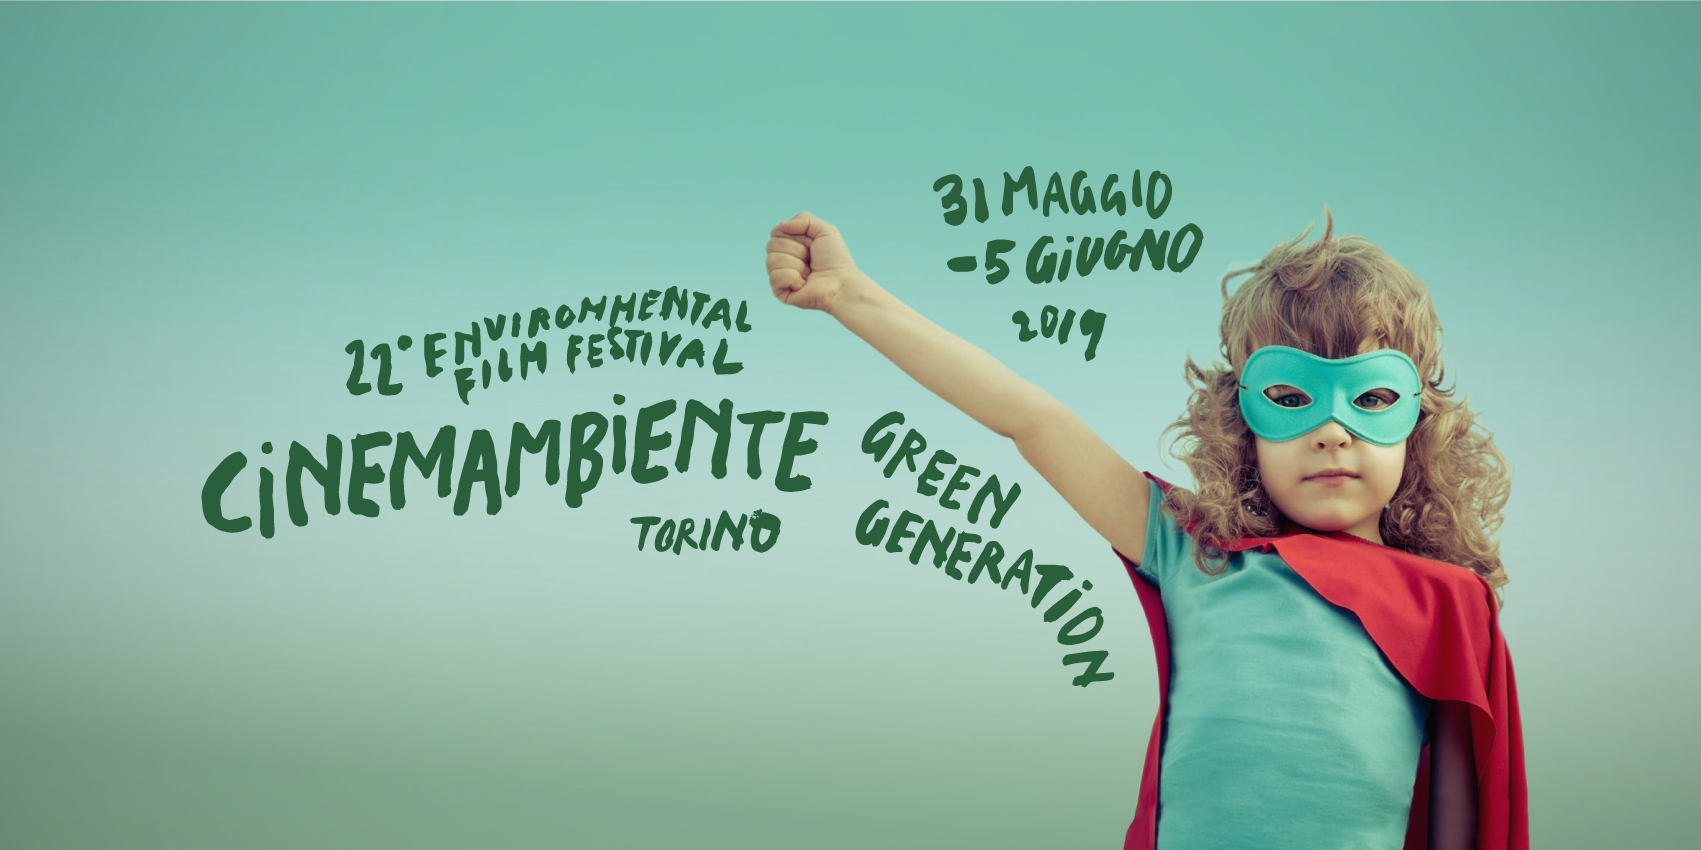 La “Green Generation” al centro del Festival CinemAmbiente 2019